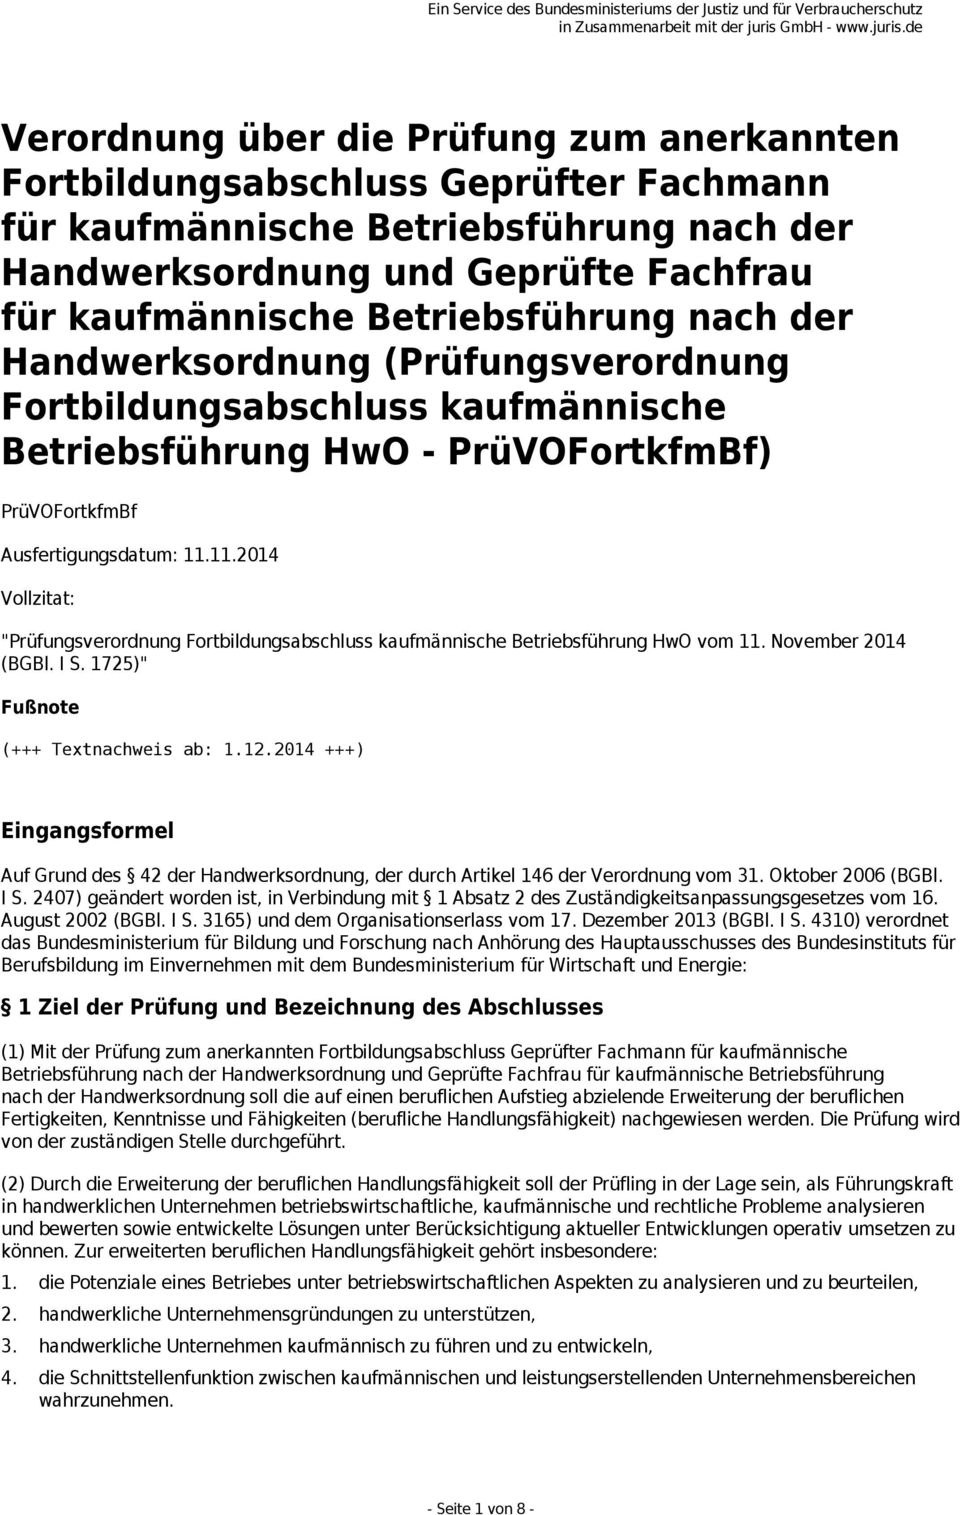 11.2014 Vollzitat: "Prüfungsverordnung Fortbildungsabschluss kaufmännische Betriebsführung HwO vom 11. November 2014 (BGBl. I S. 1725)" Fußnote (+++ Textnachweis ab: 1.12.